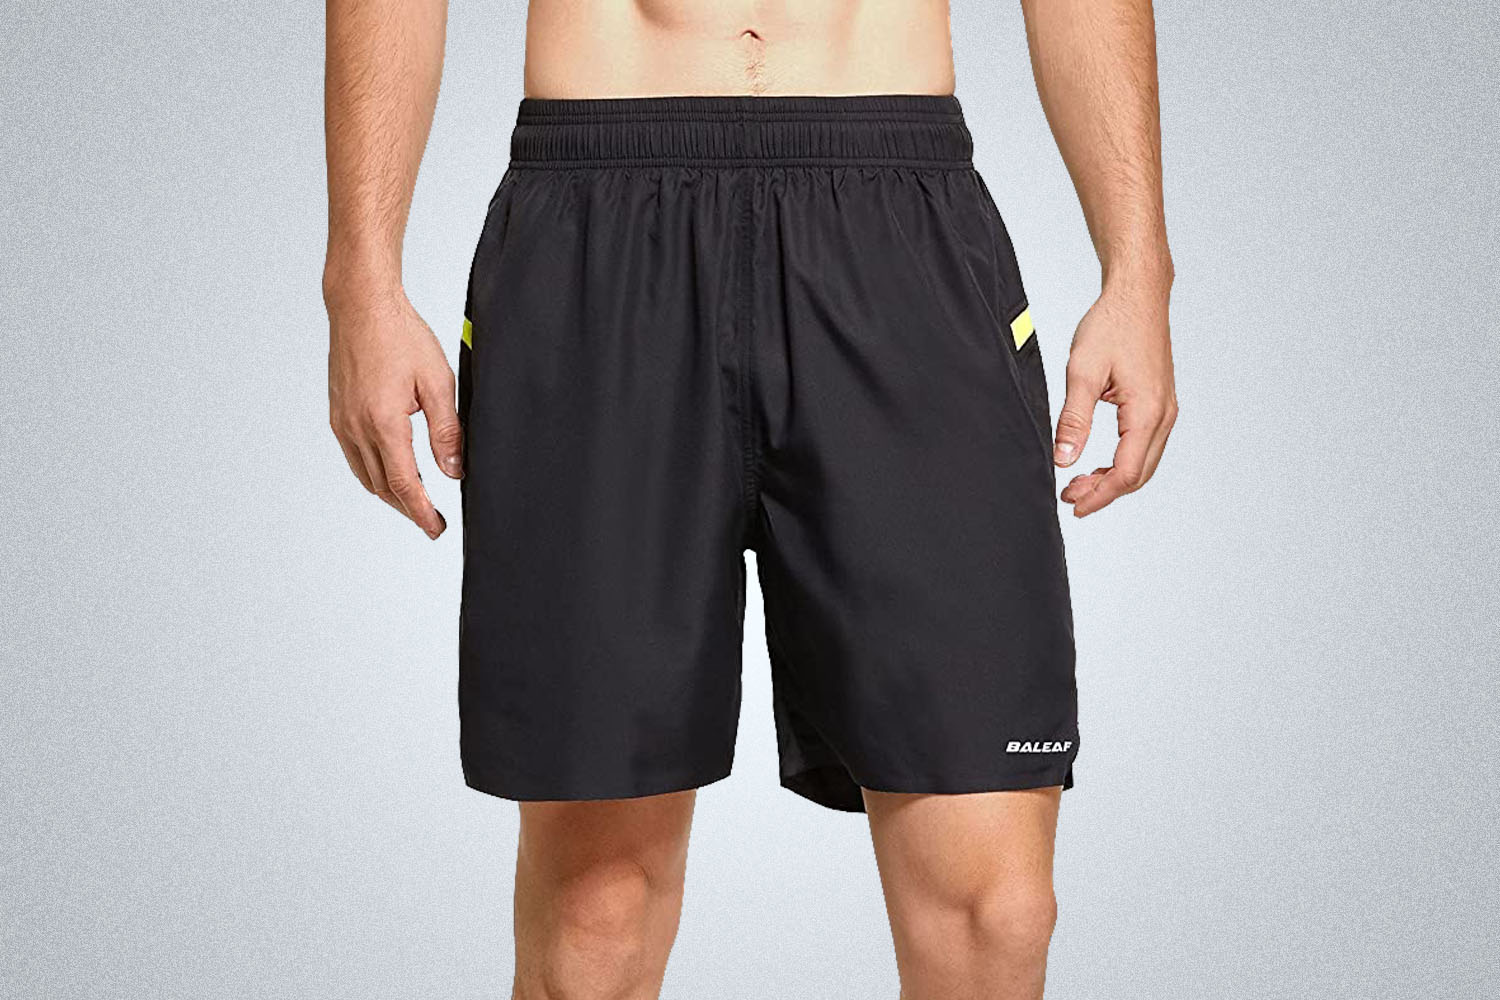 Should You Buy? BALEAF Mens Running Workout Shorts 